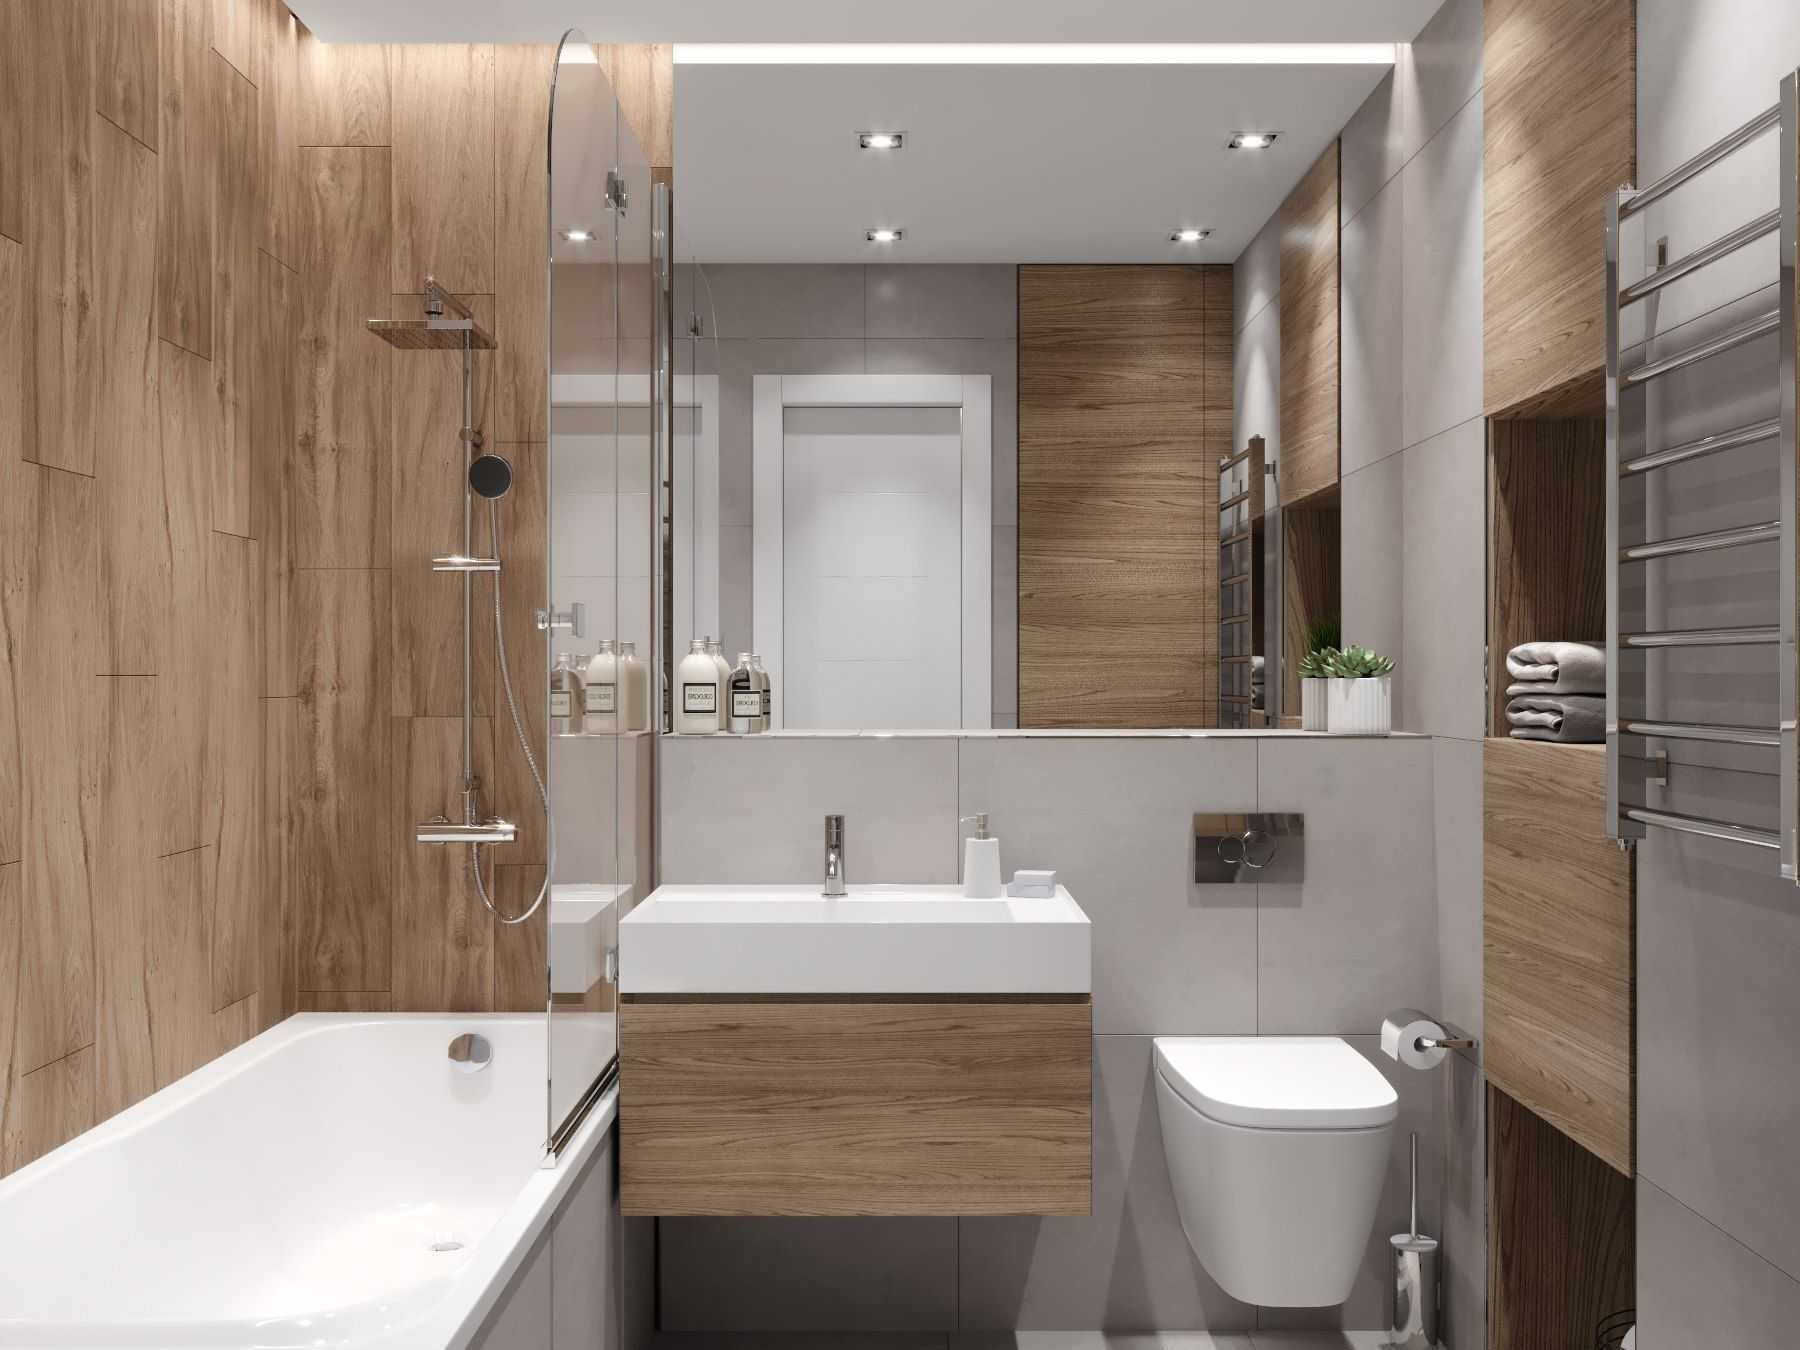 Душ в ванной без душевой кабины (50 фото): как сделать вариант без стенок в маленькой комнате, тонкости оформления